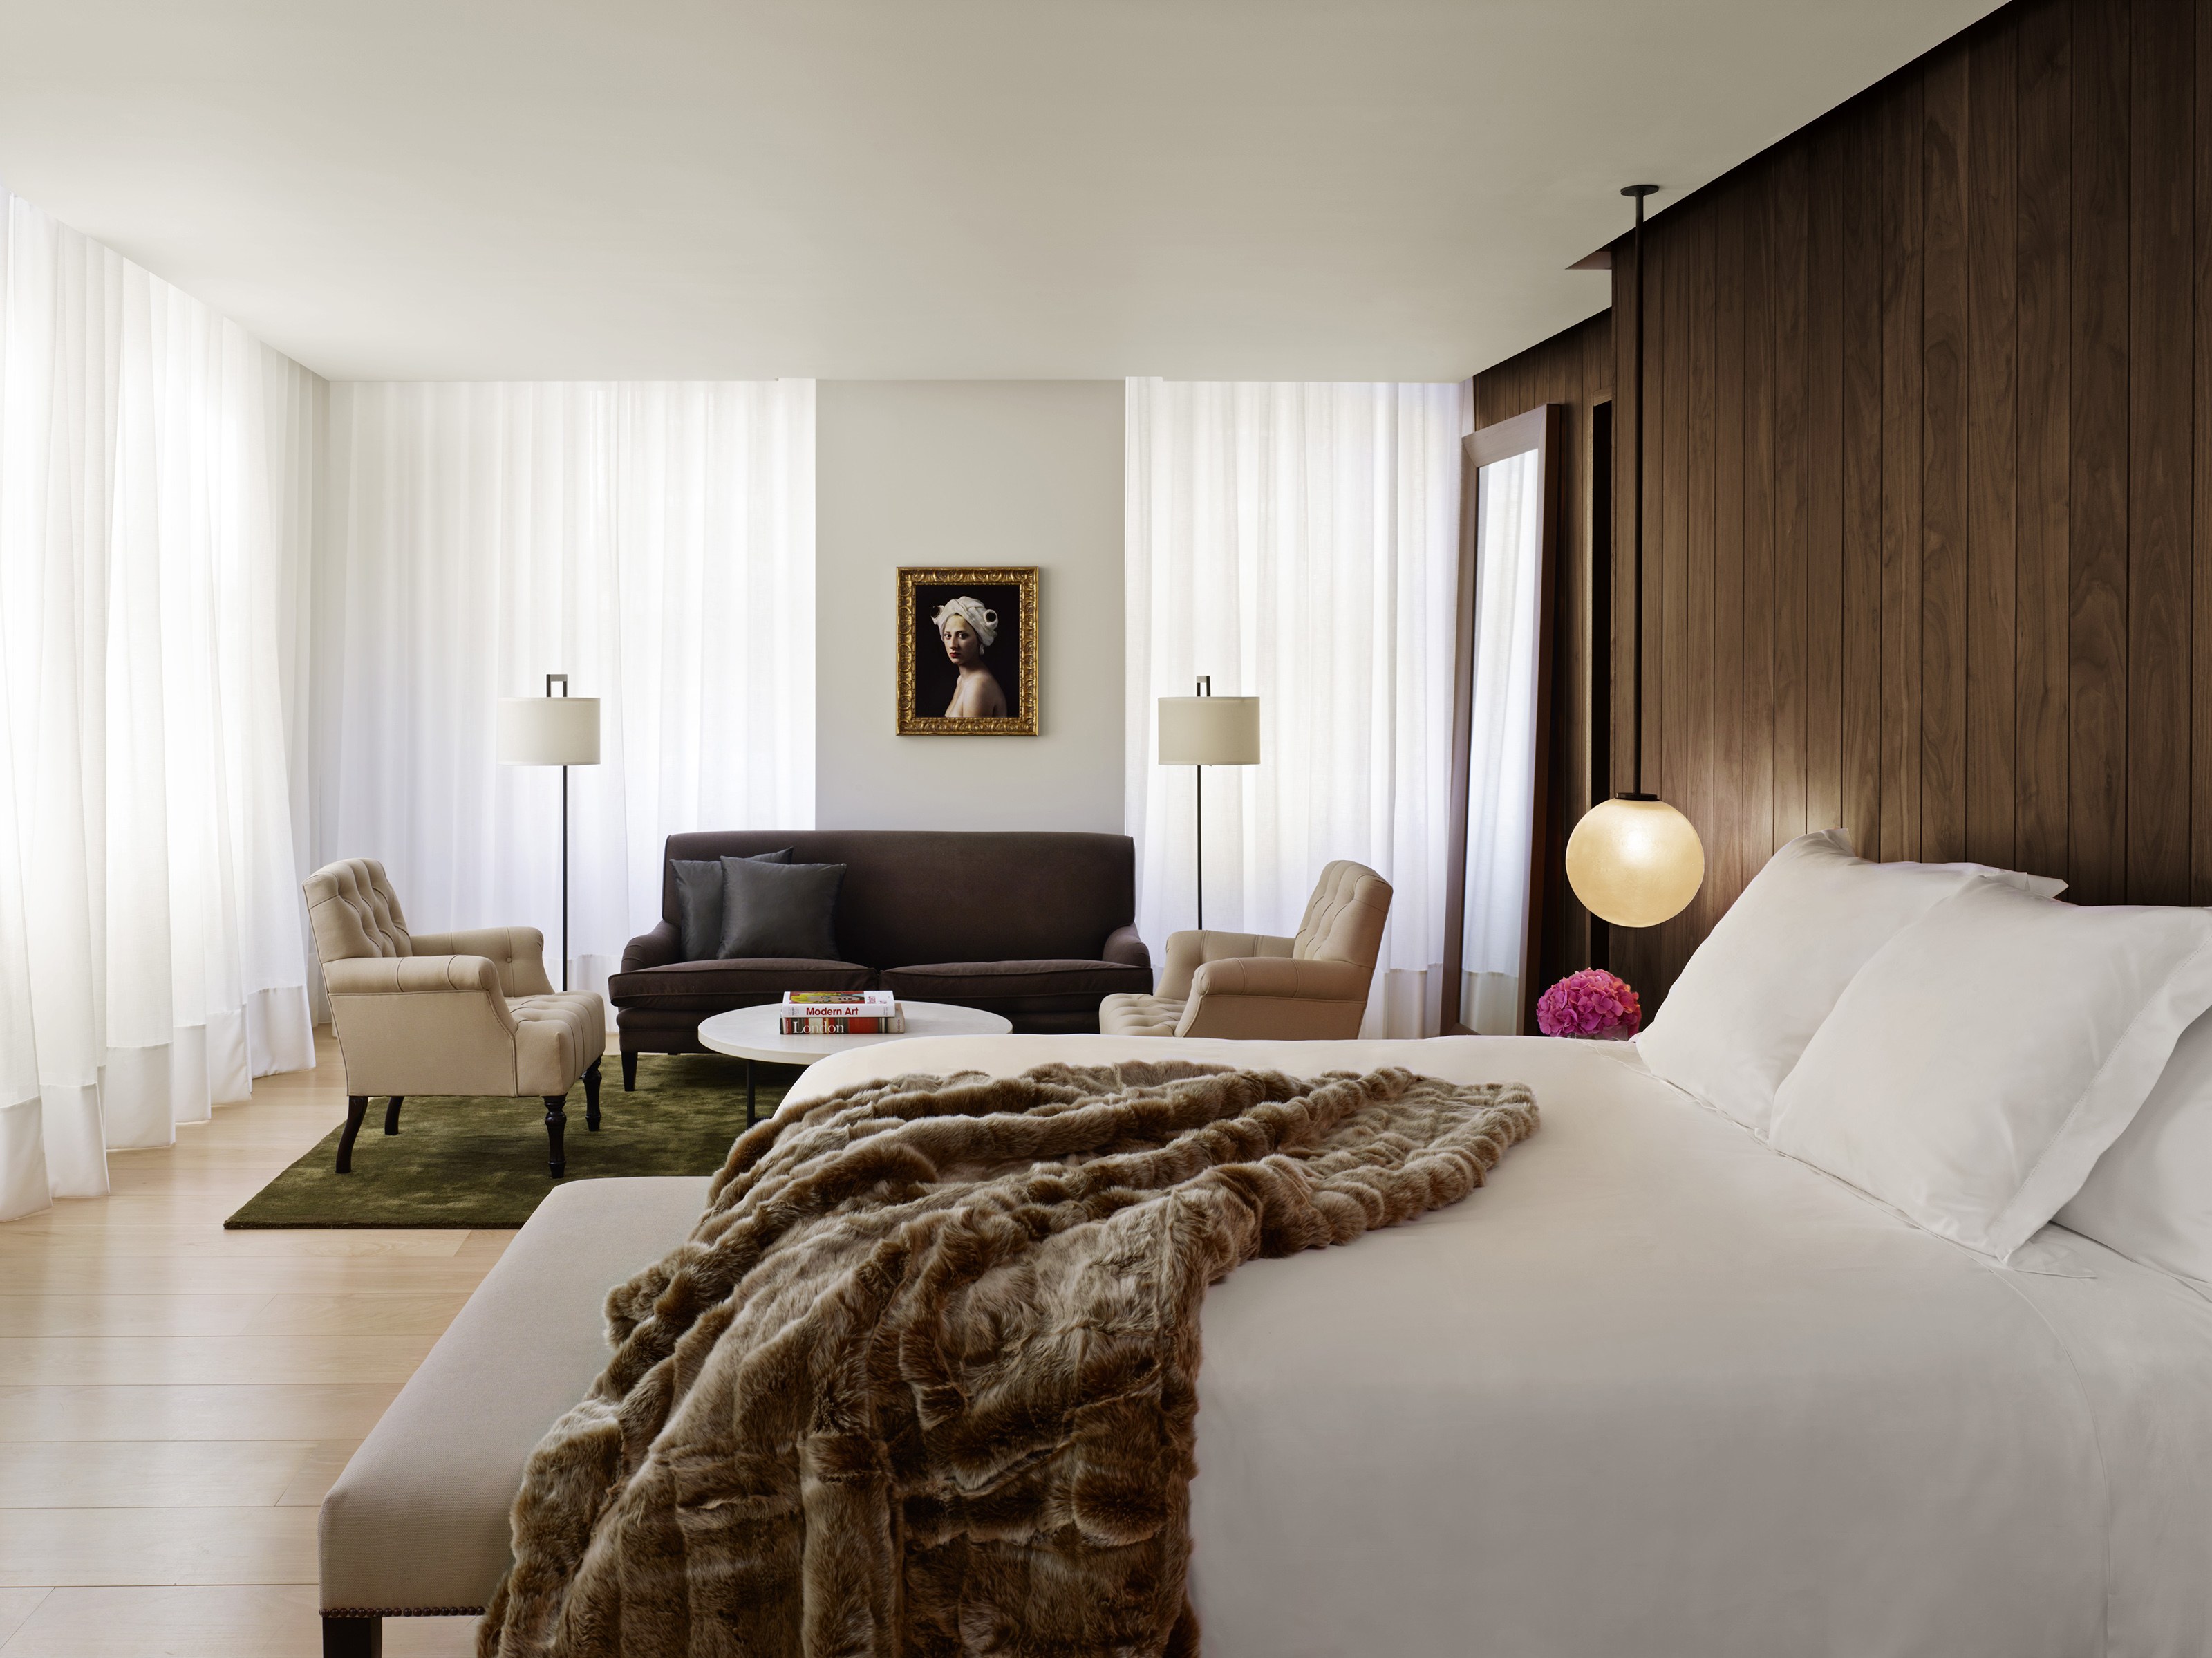  Leer hoe je je kamer kunt inrichten als een luxe hotel